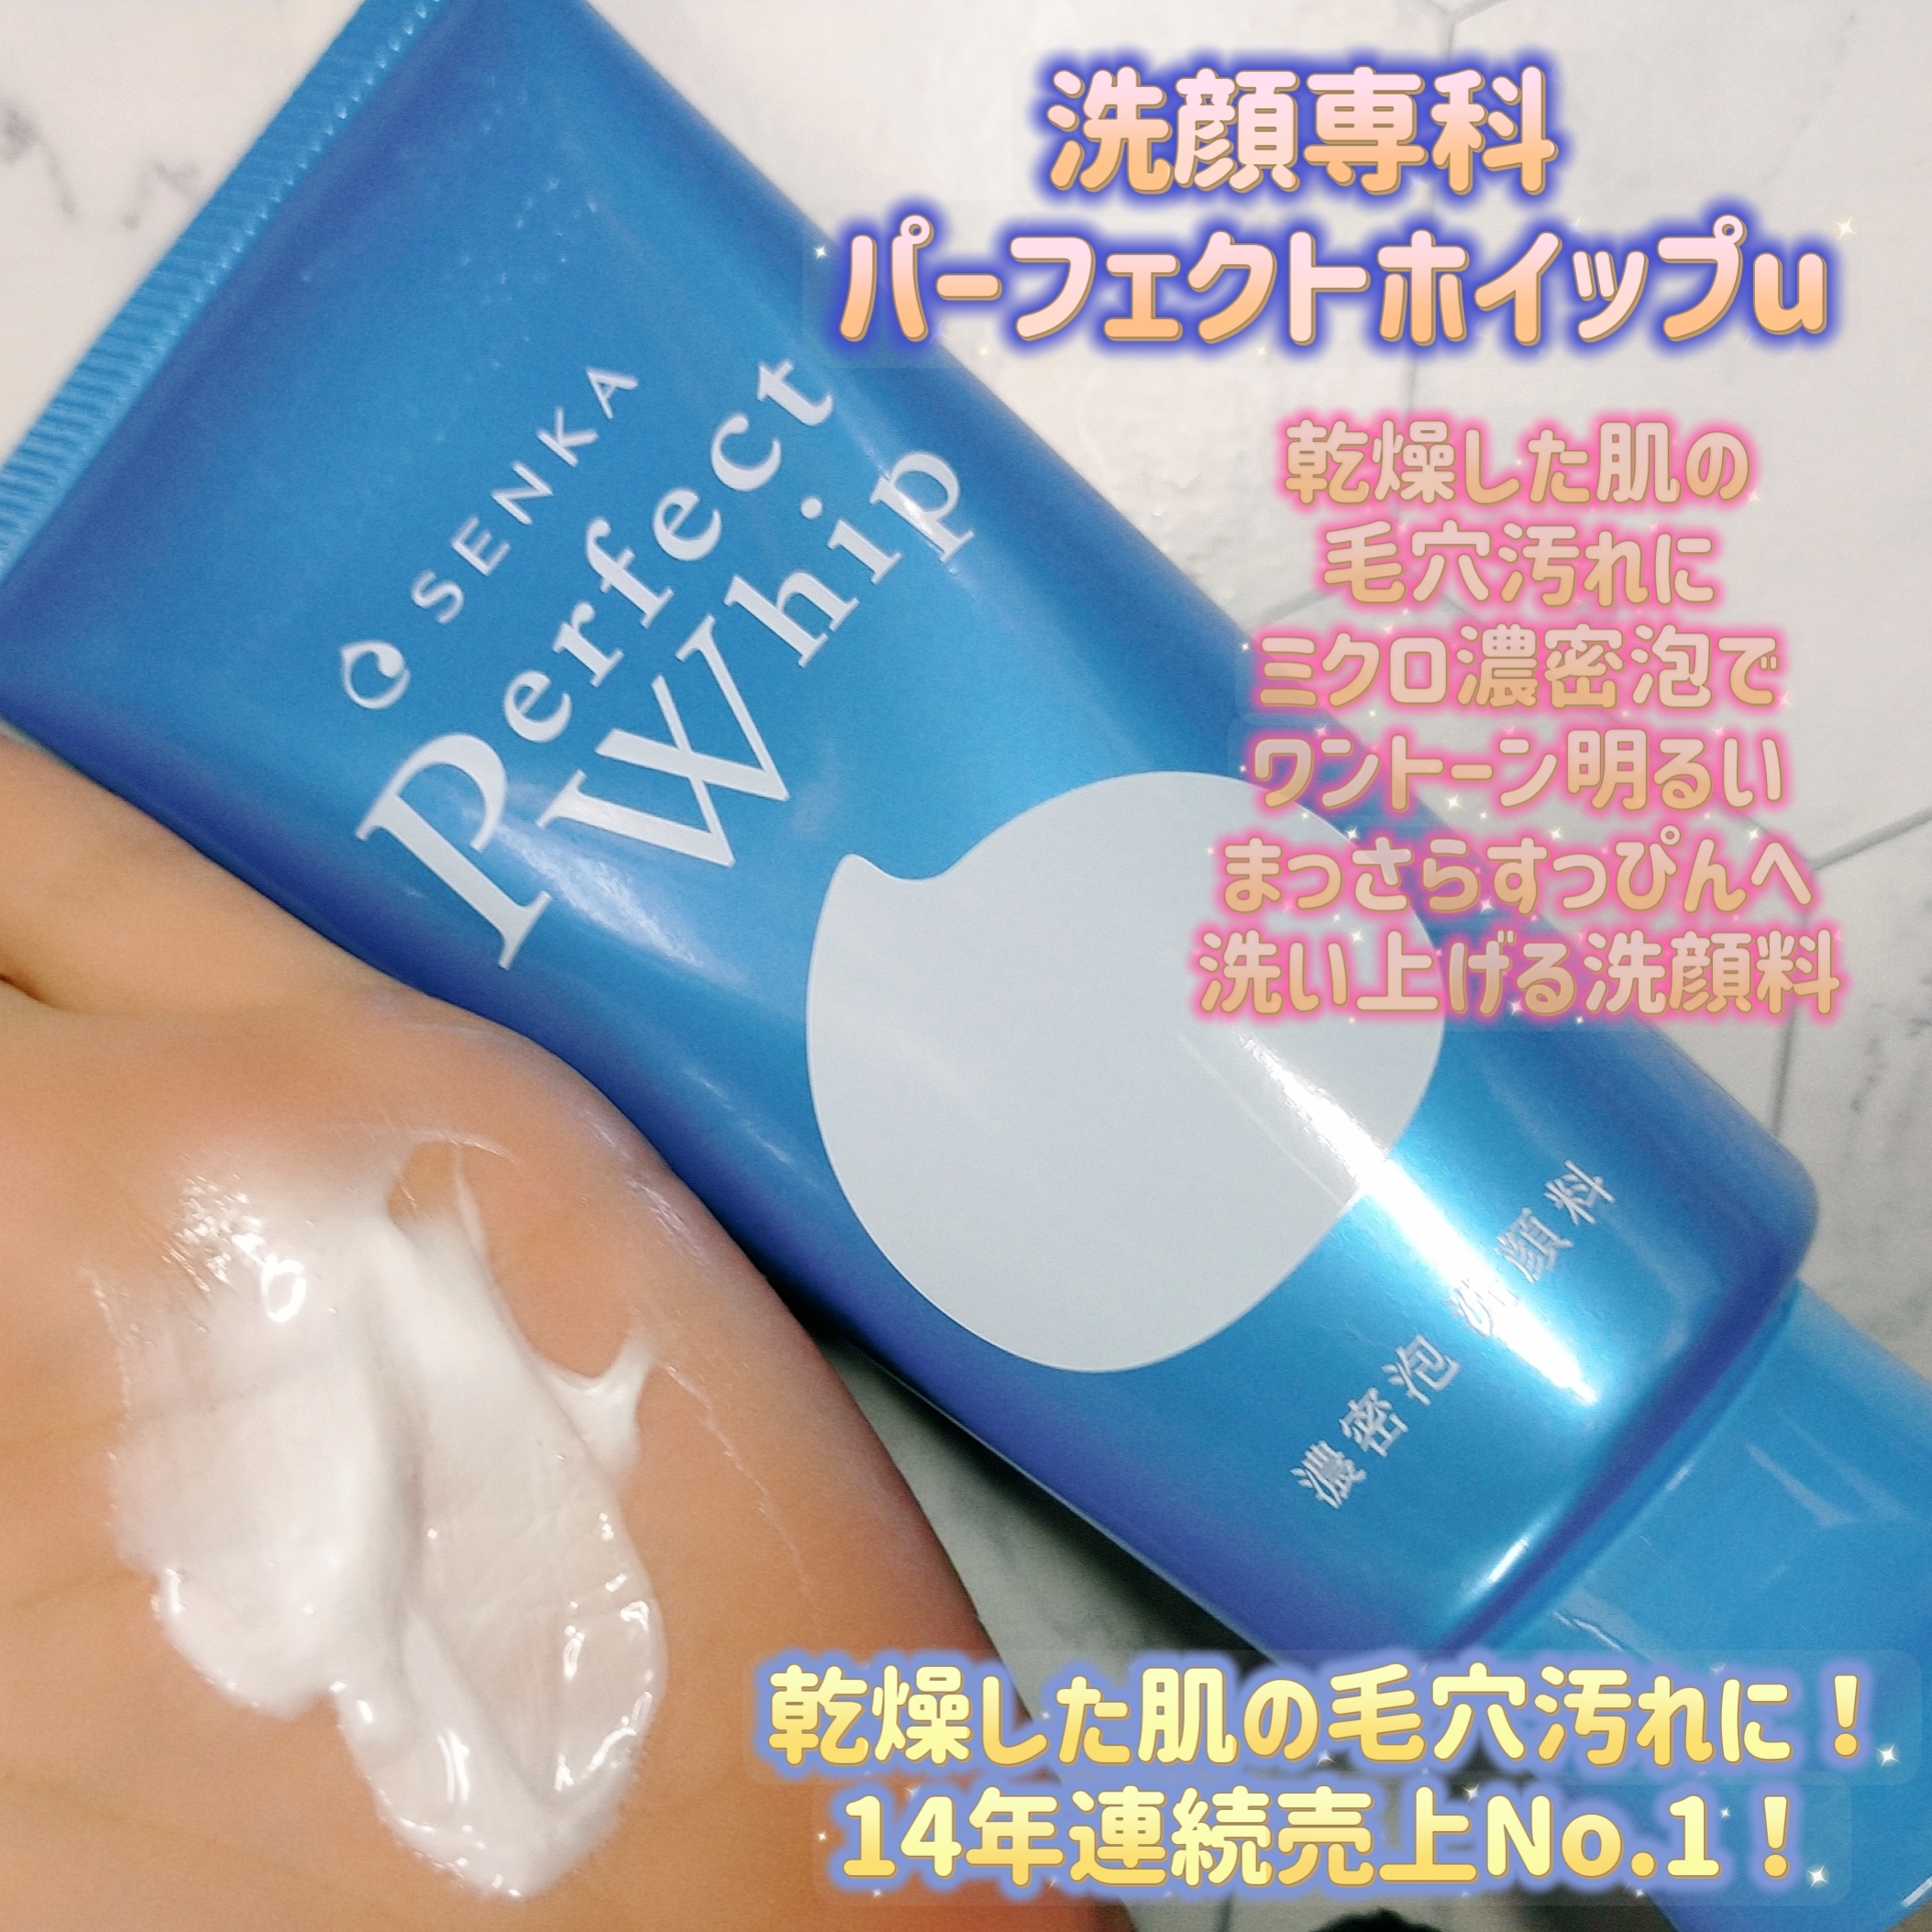 洗顔専科 パーフェクトホイップuを使ったみこさんのクチコミ画像1